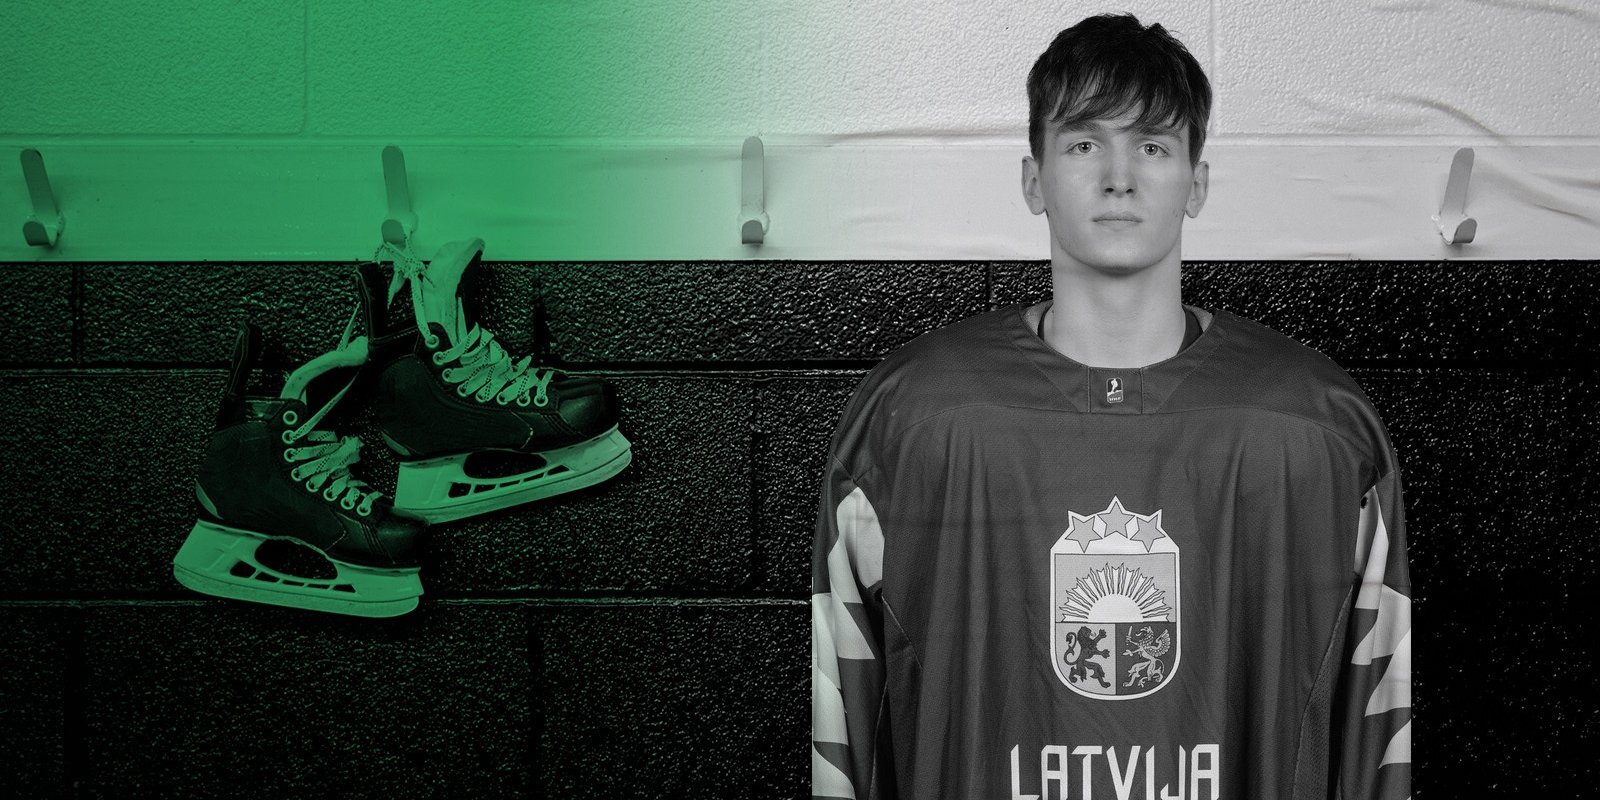 Pārējās hokeja pasaules Nr. 1. Kanādieši augstu novērtē 17 gadus veco latviešu aizsargu